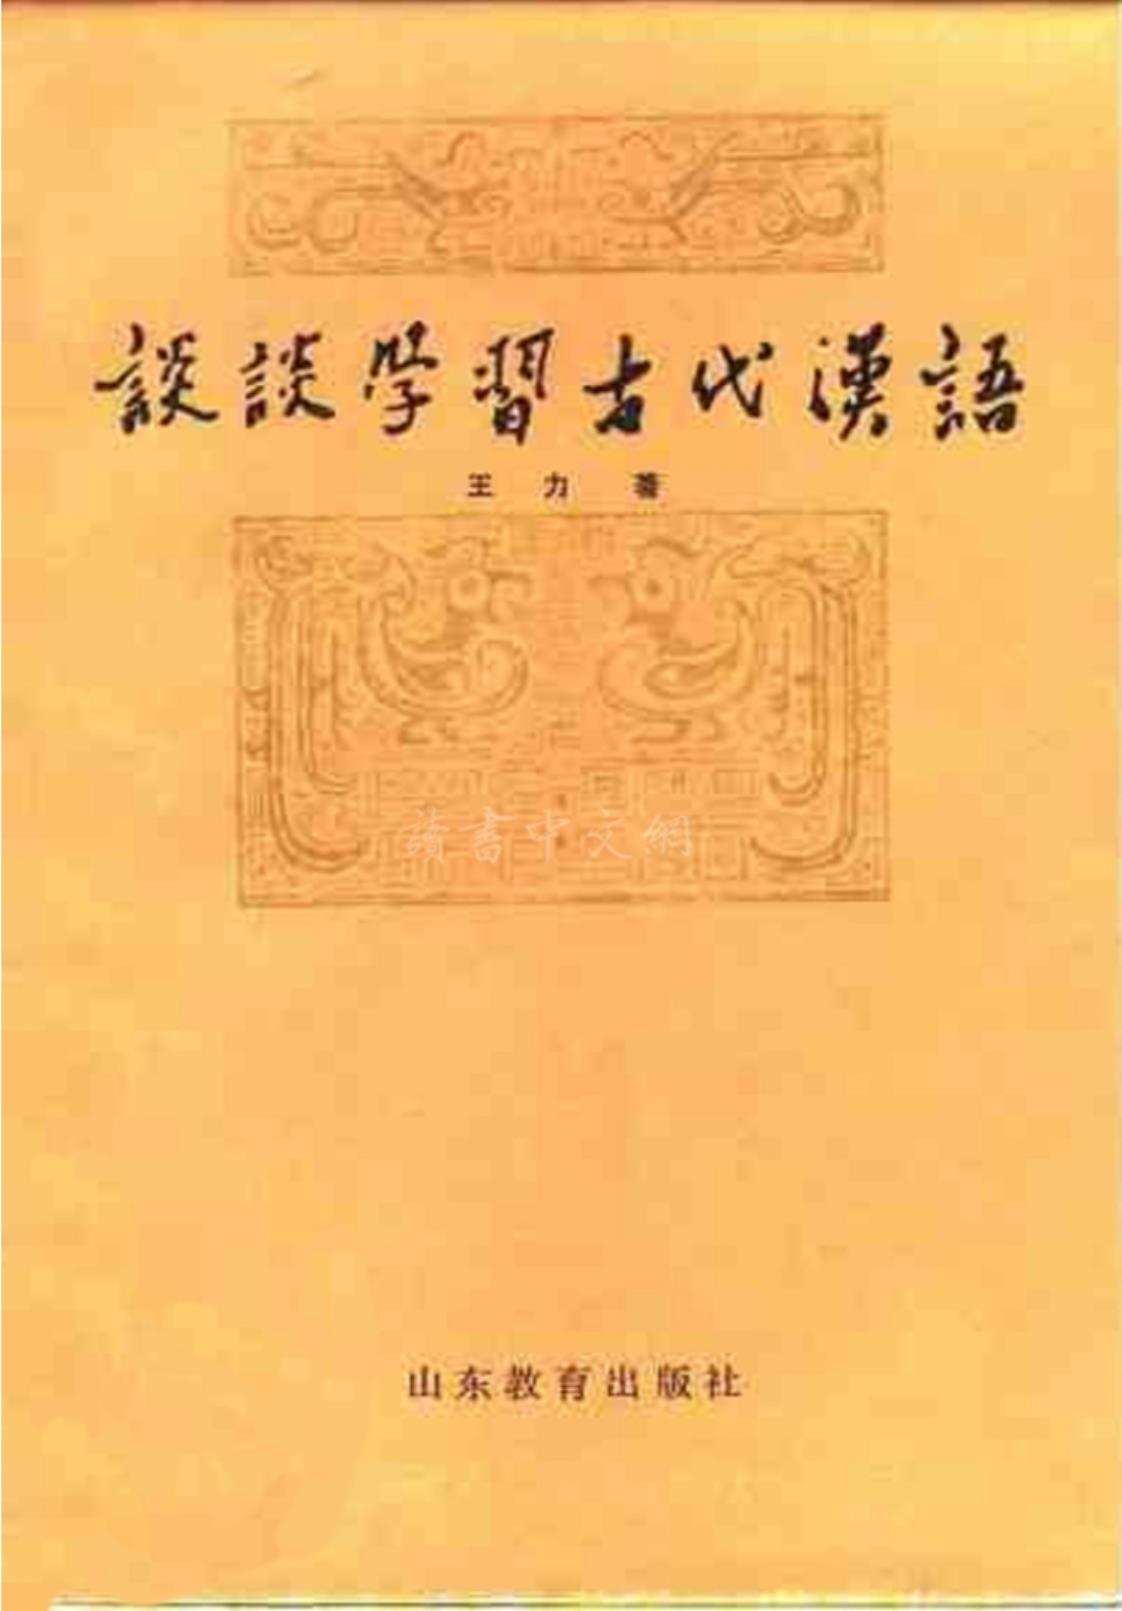 [谈谈学习古代汉语][王力(著)]高清PDF电子书